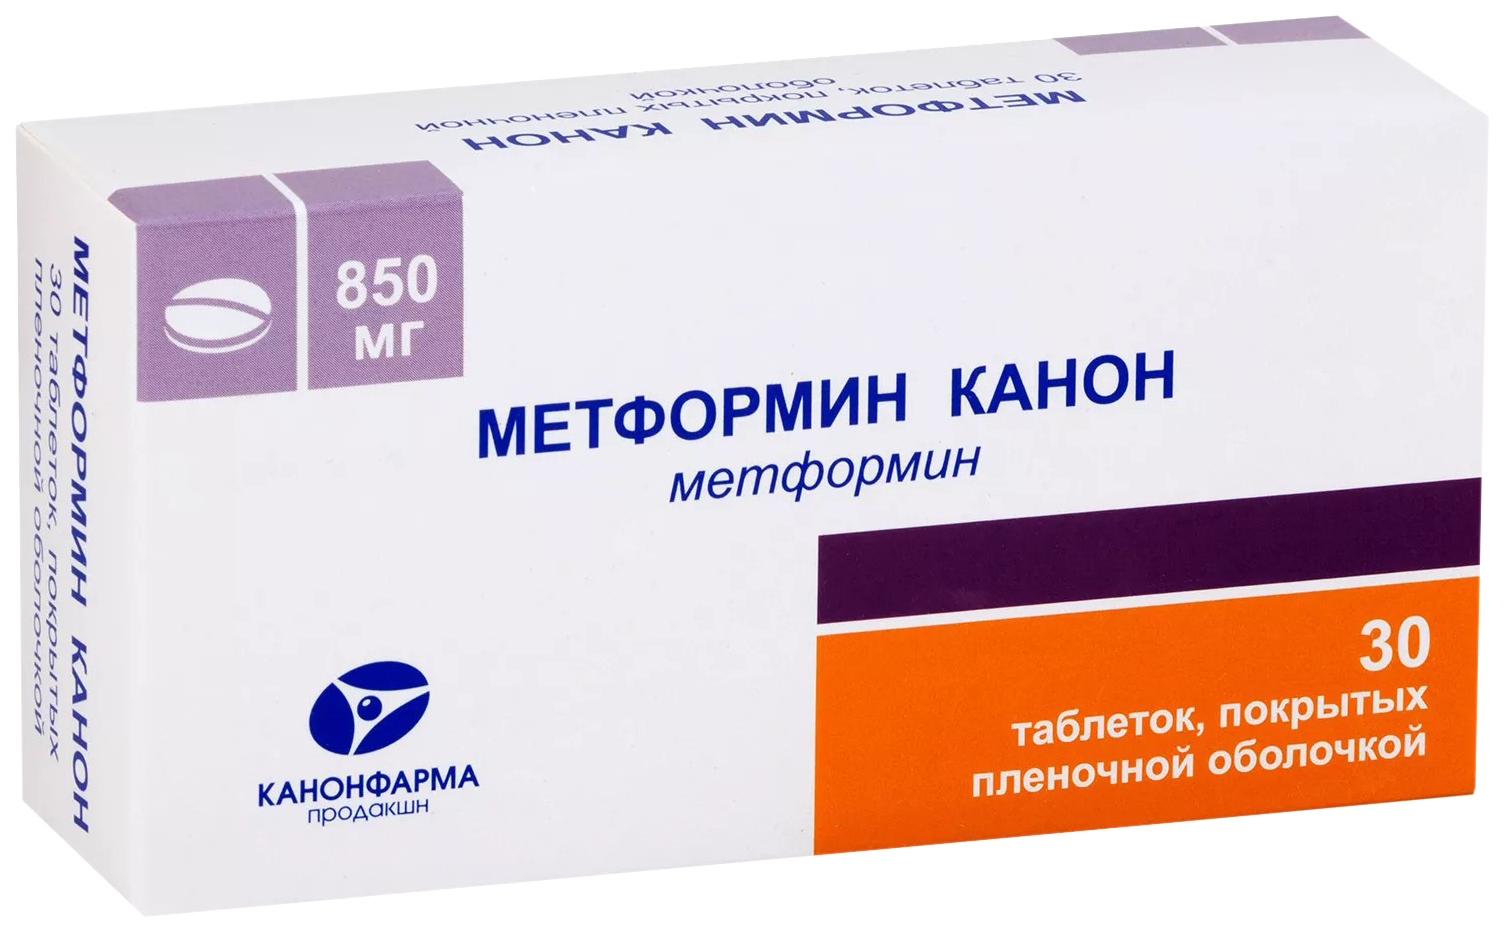 Метформин-Канон таблетки 850 мг 30 шт.